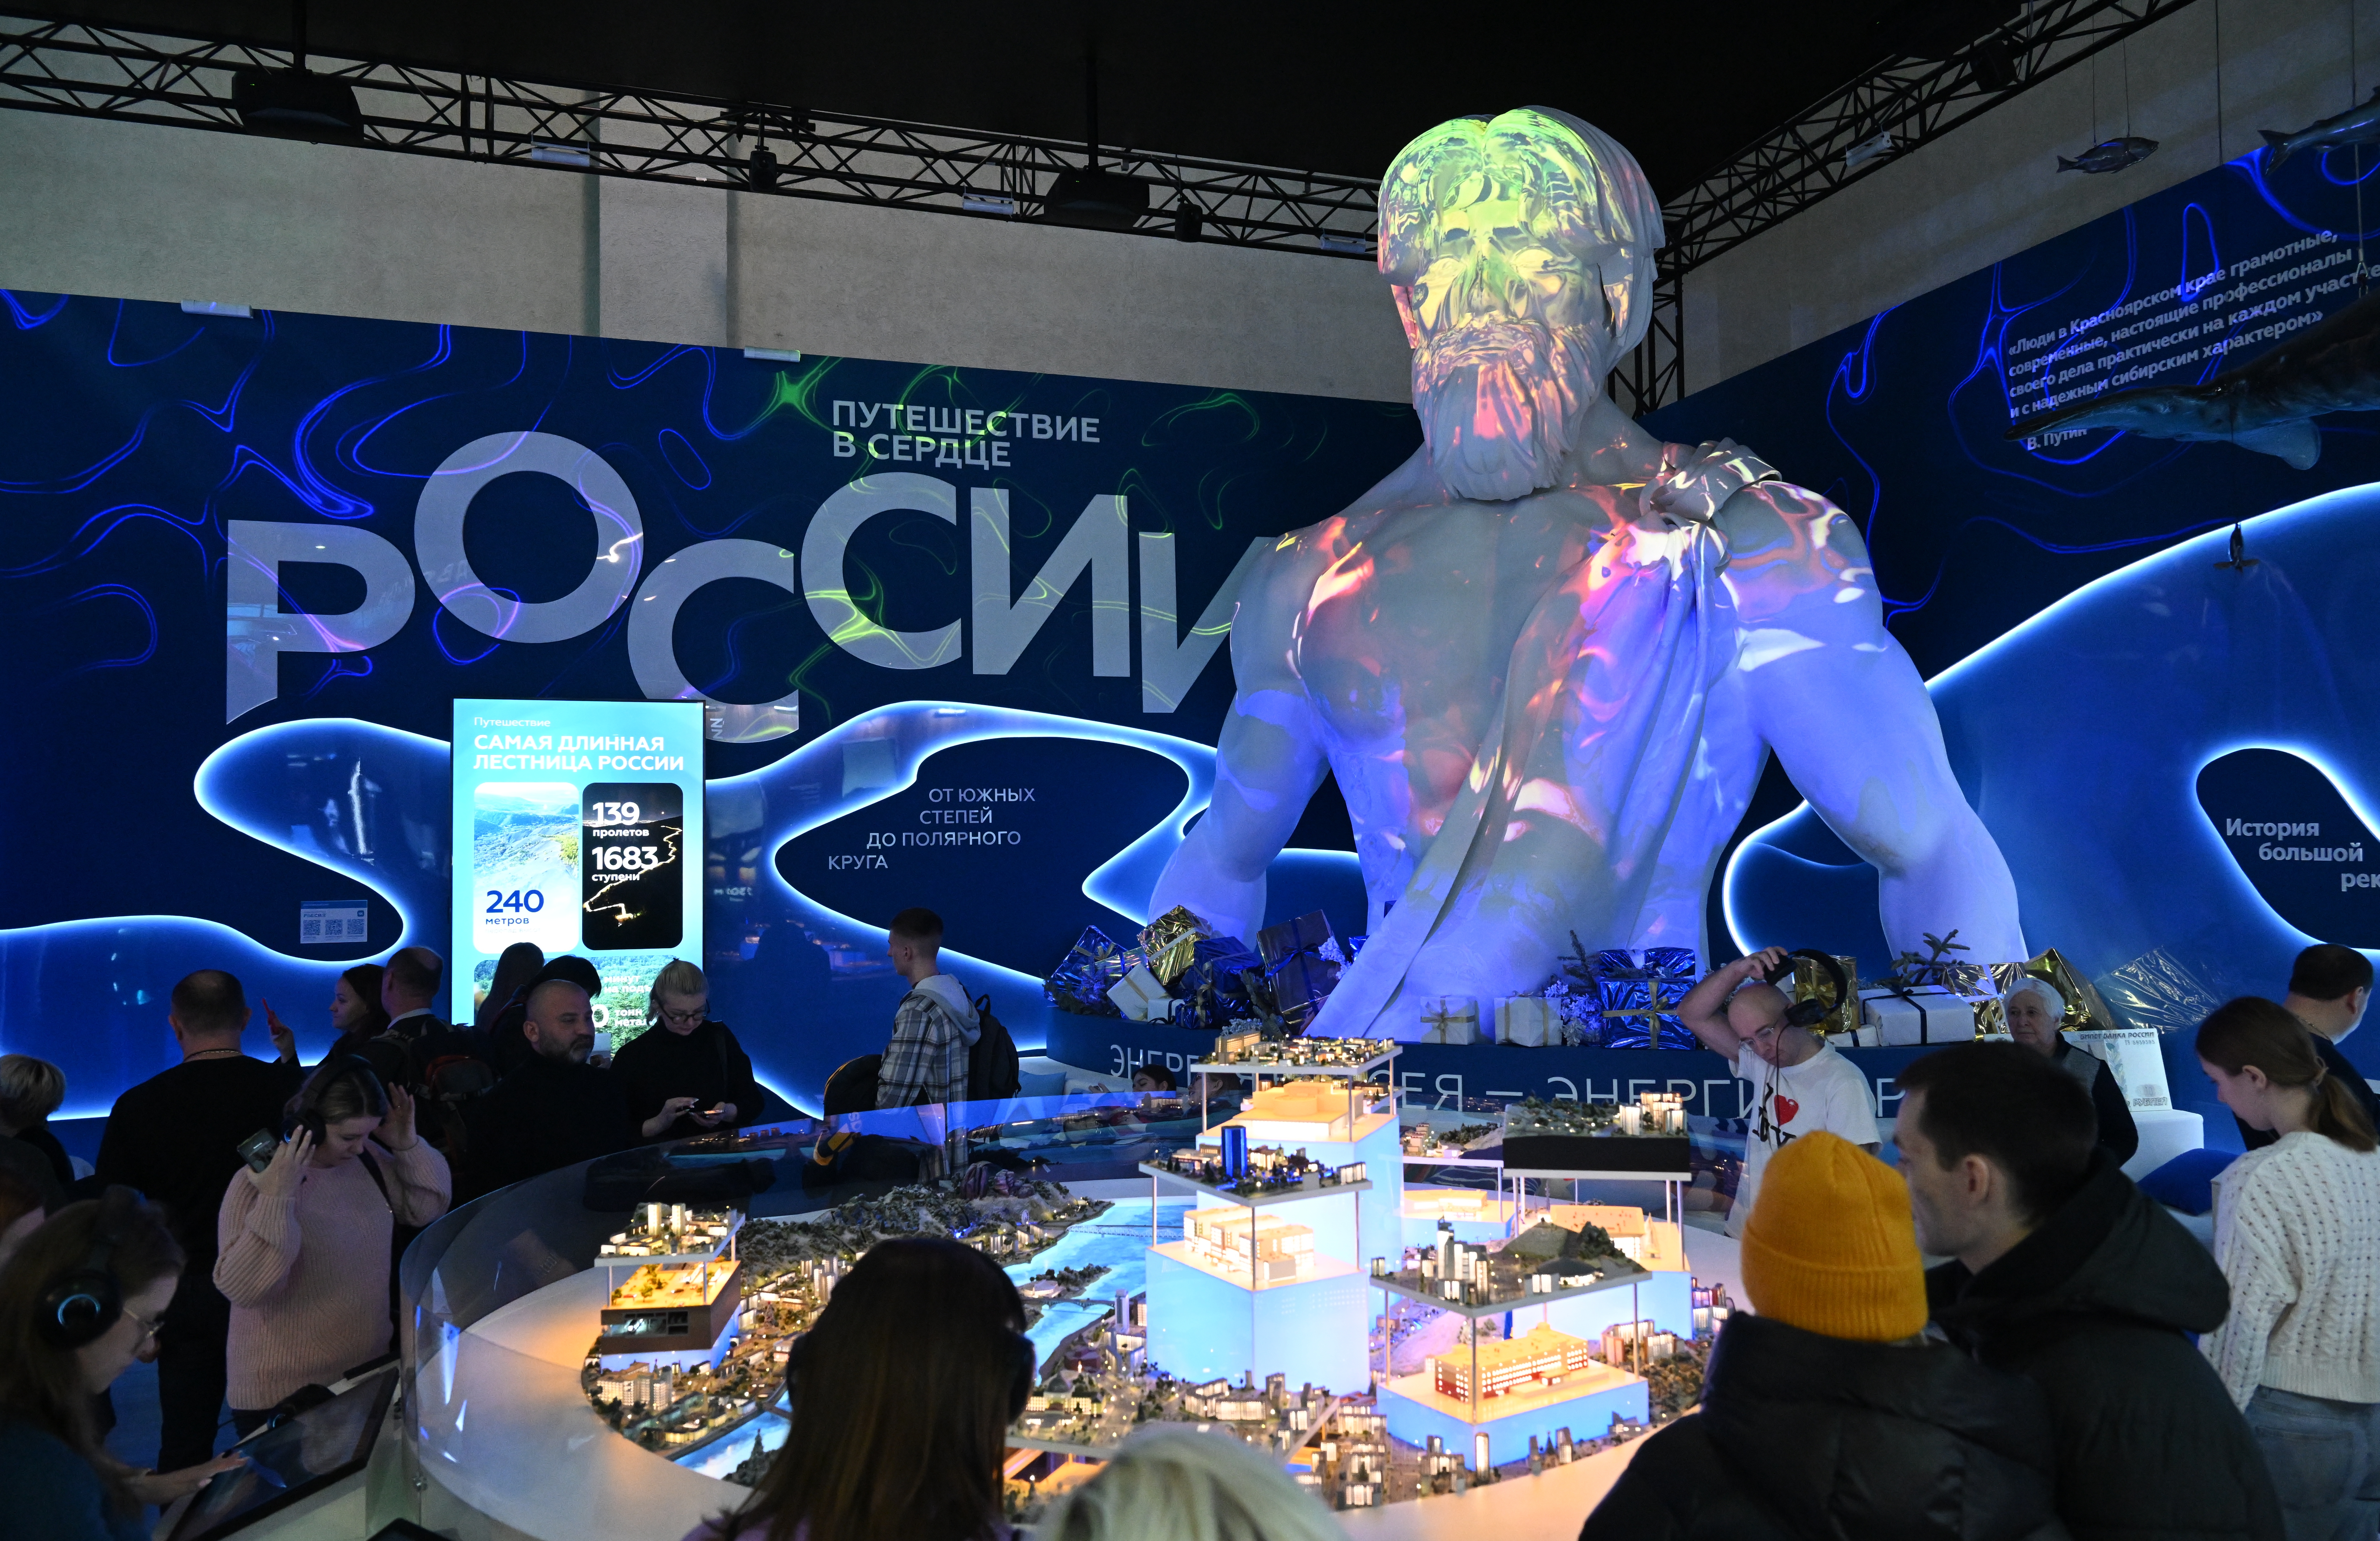 Исследование ВШЭ и ЭИСИ: положительные оценки выставки «Россия» посетителями продолжают расти